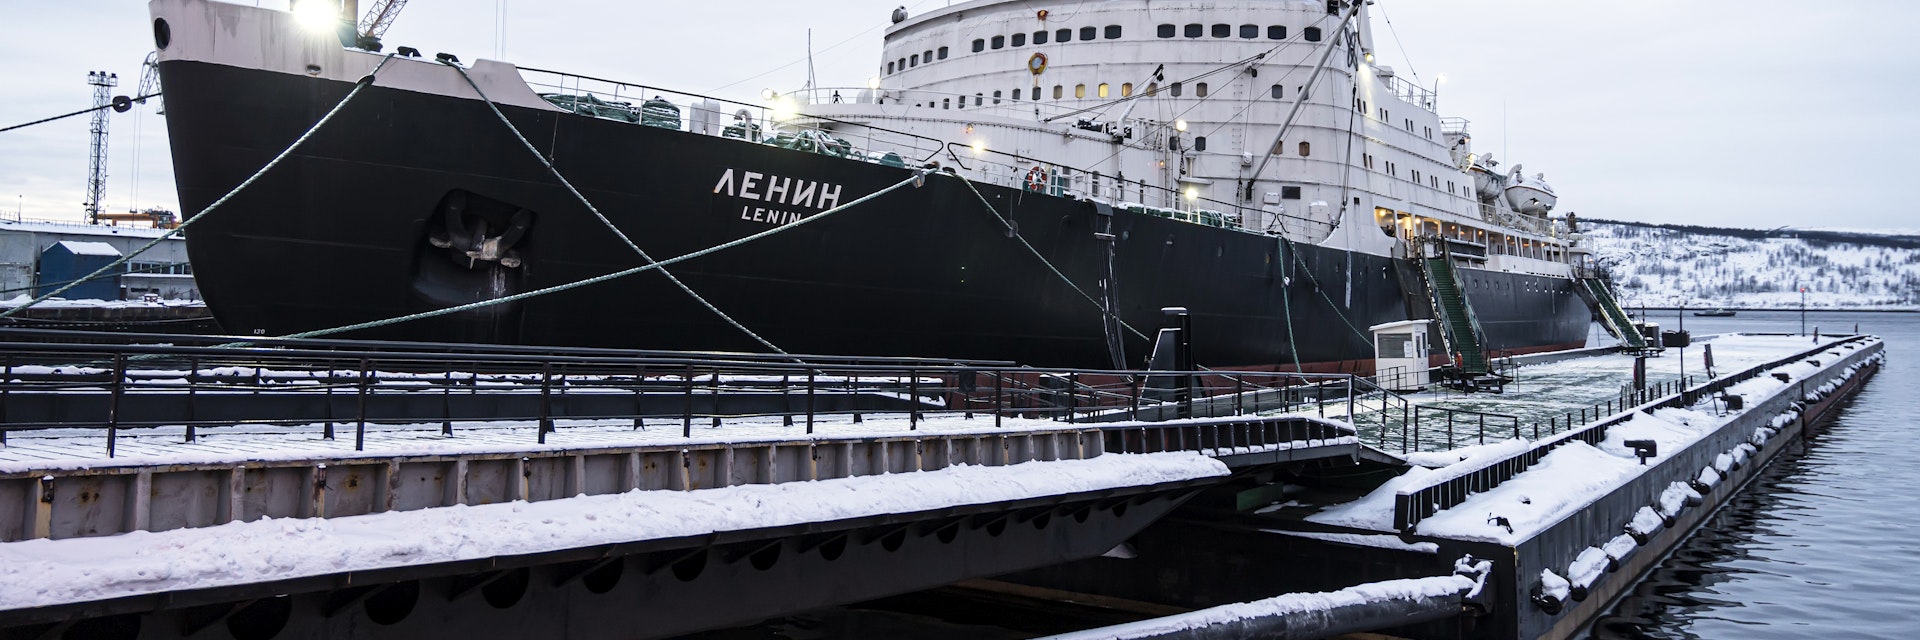 Nuclear icebreaker Lenin in the port of Murmansk in winter.